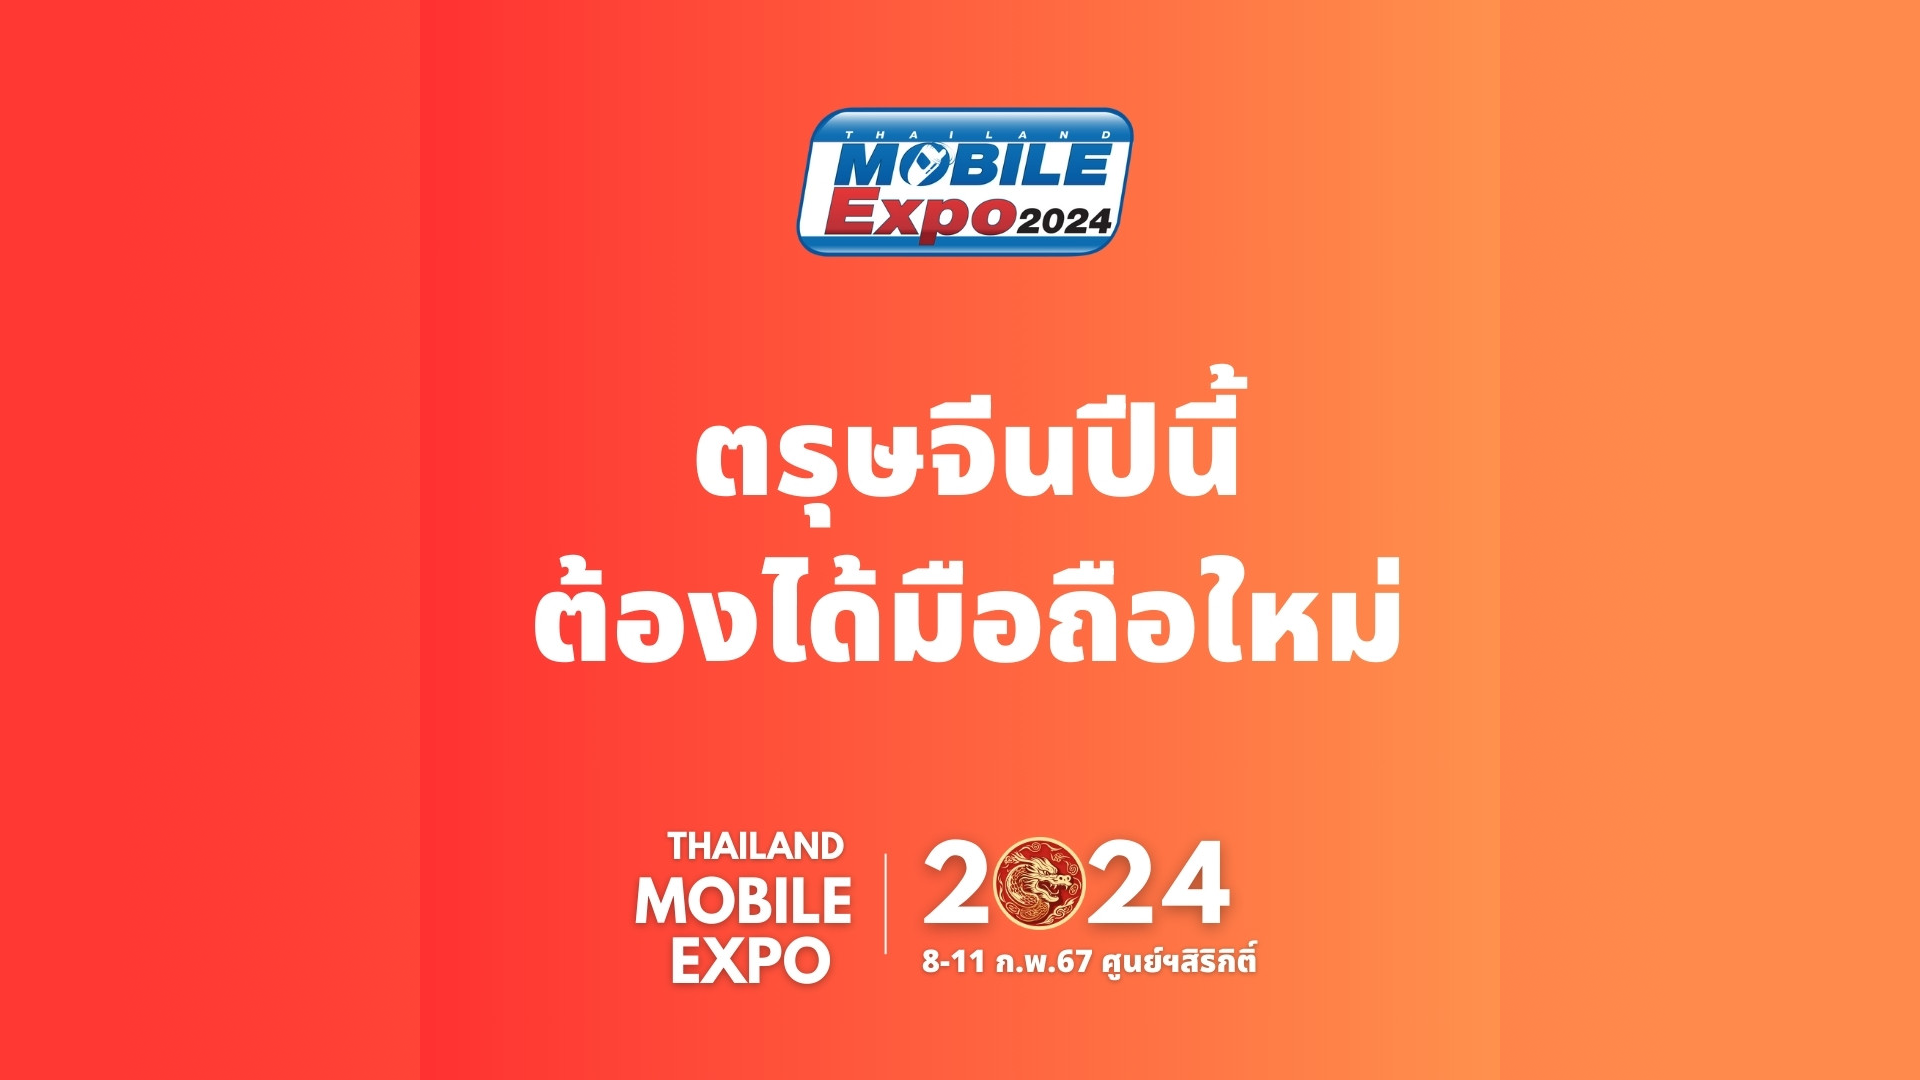 ตรุษจีนปีนี้ต้องได้มือถือใหม่ Thailand Mobile Expo 2024 มหกรรมมือถือที่ใหญ่ที่สุดของประเทศ ครั้งต้นปี จัดวันที่ 8-11 กุมภาพันธ์ 2567 ศูนย์ฯสิริกิติ์